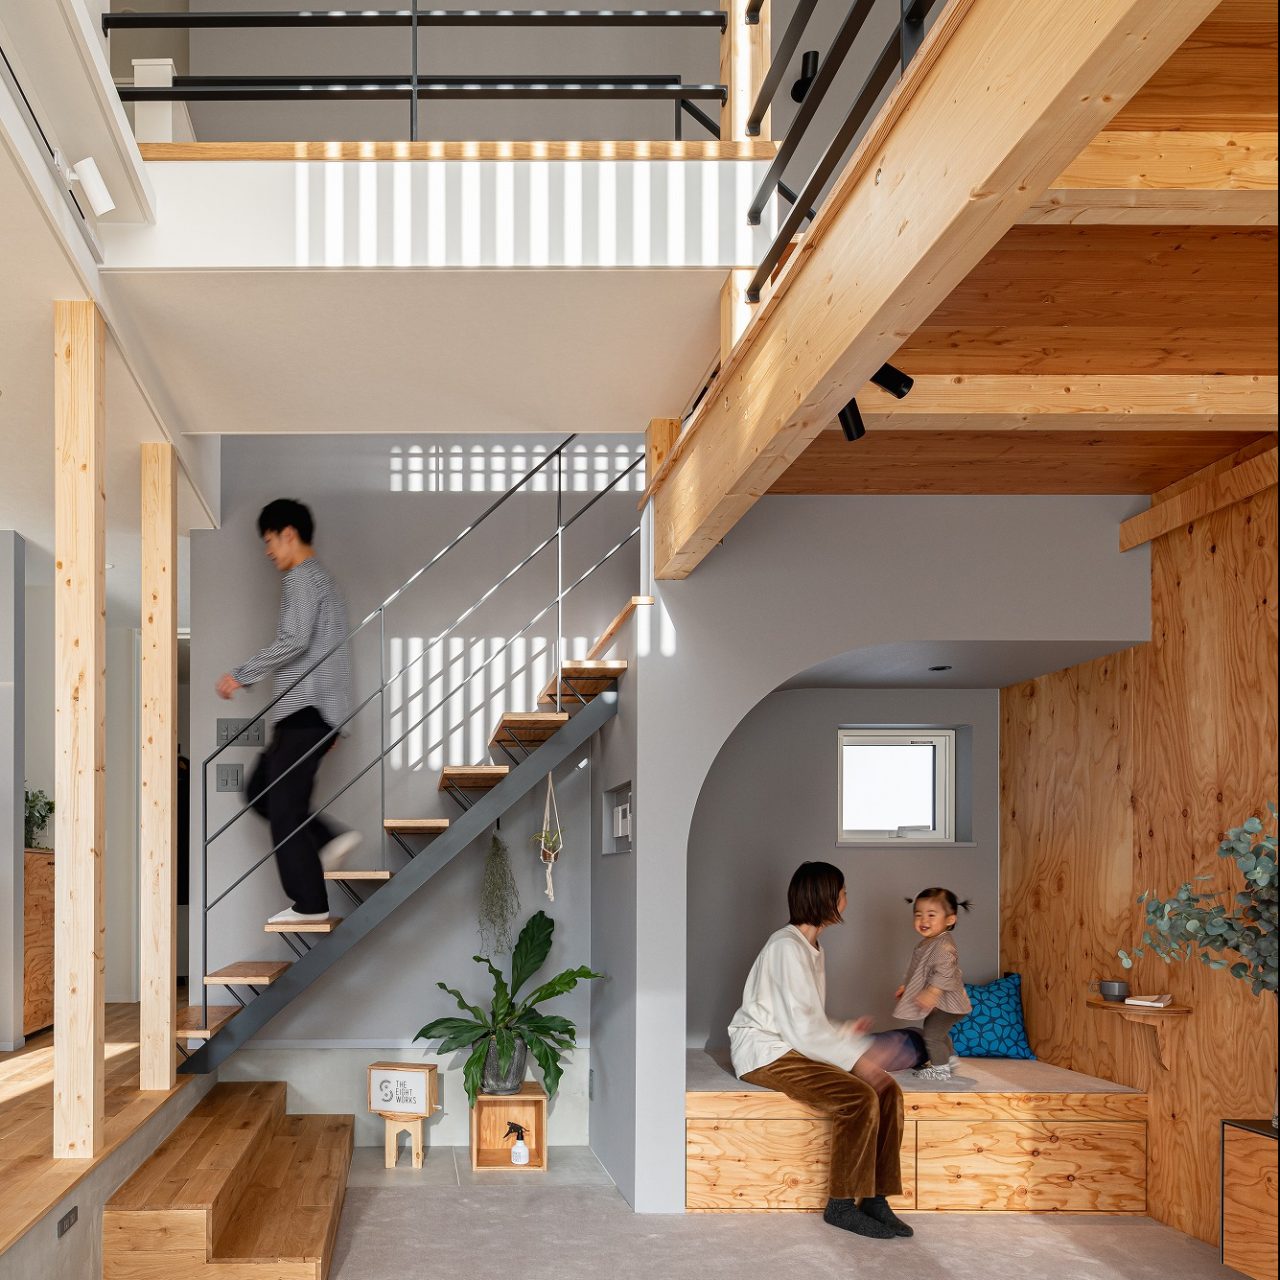 The Eight Works エイトワークスは札幌市南区澄川を拠点に住宅の建築を手掛けるビルダーです 木製の造作家具や天然木をデザインに取り入れ おしゃれでかっこいいアウトドアライフやオリジナリティーをテーマにクライアントのライフスタイルに沿った家づくりを行ってい